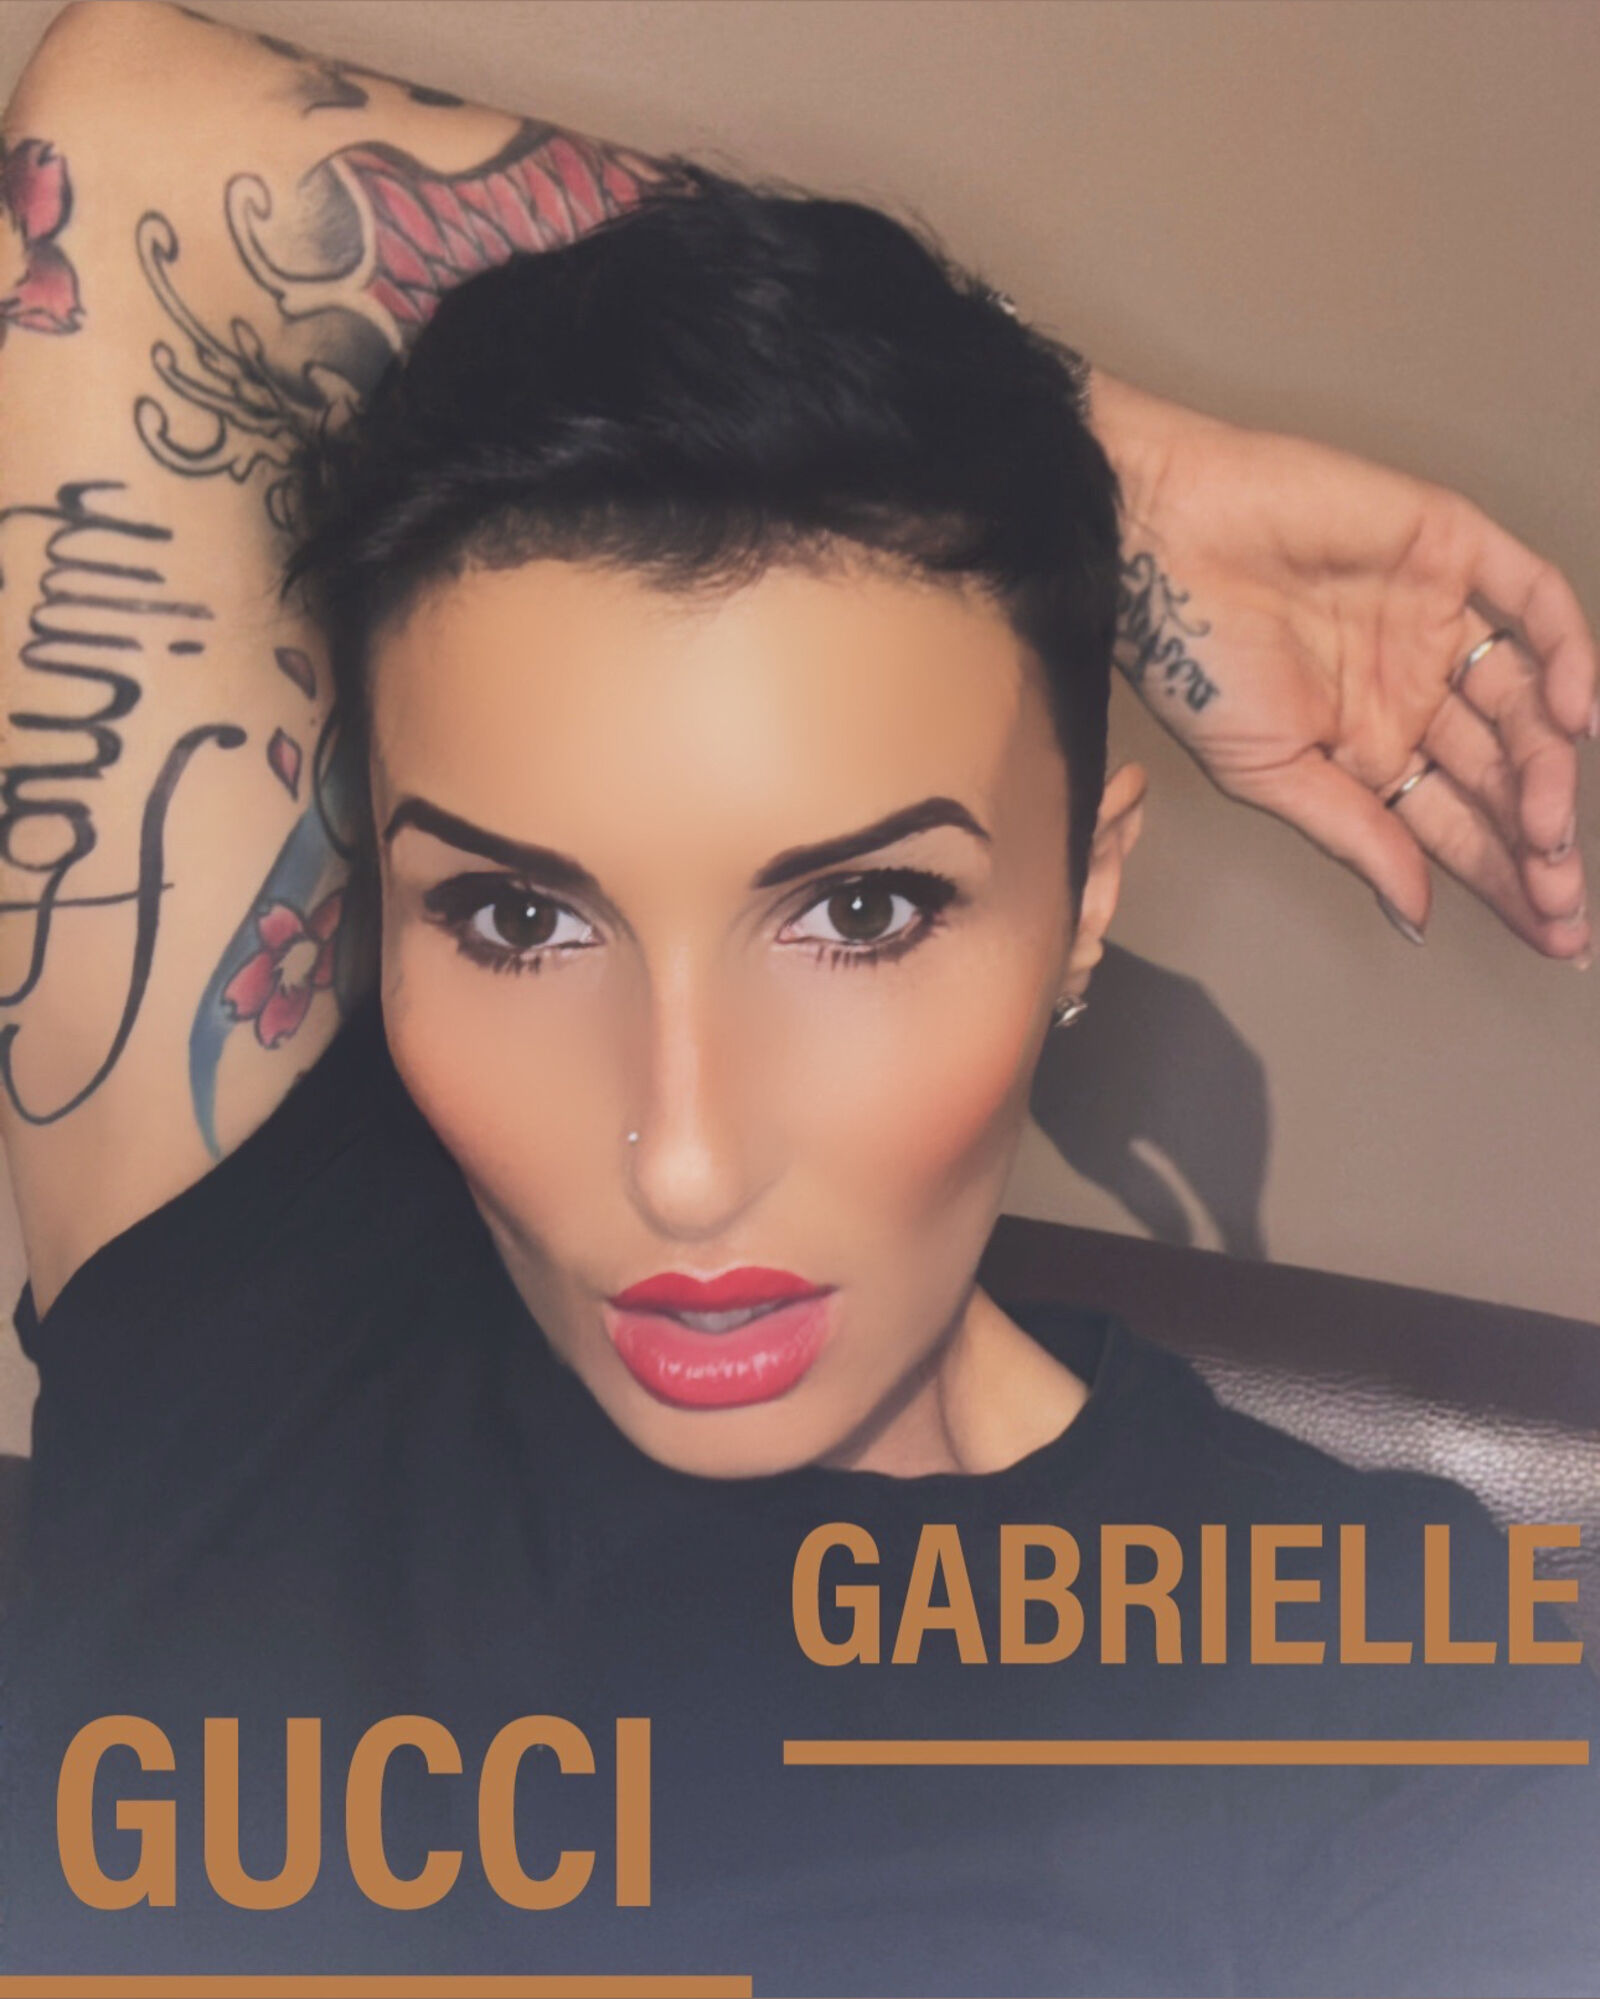 See Gabrielle Gucci😈 profile